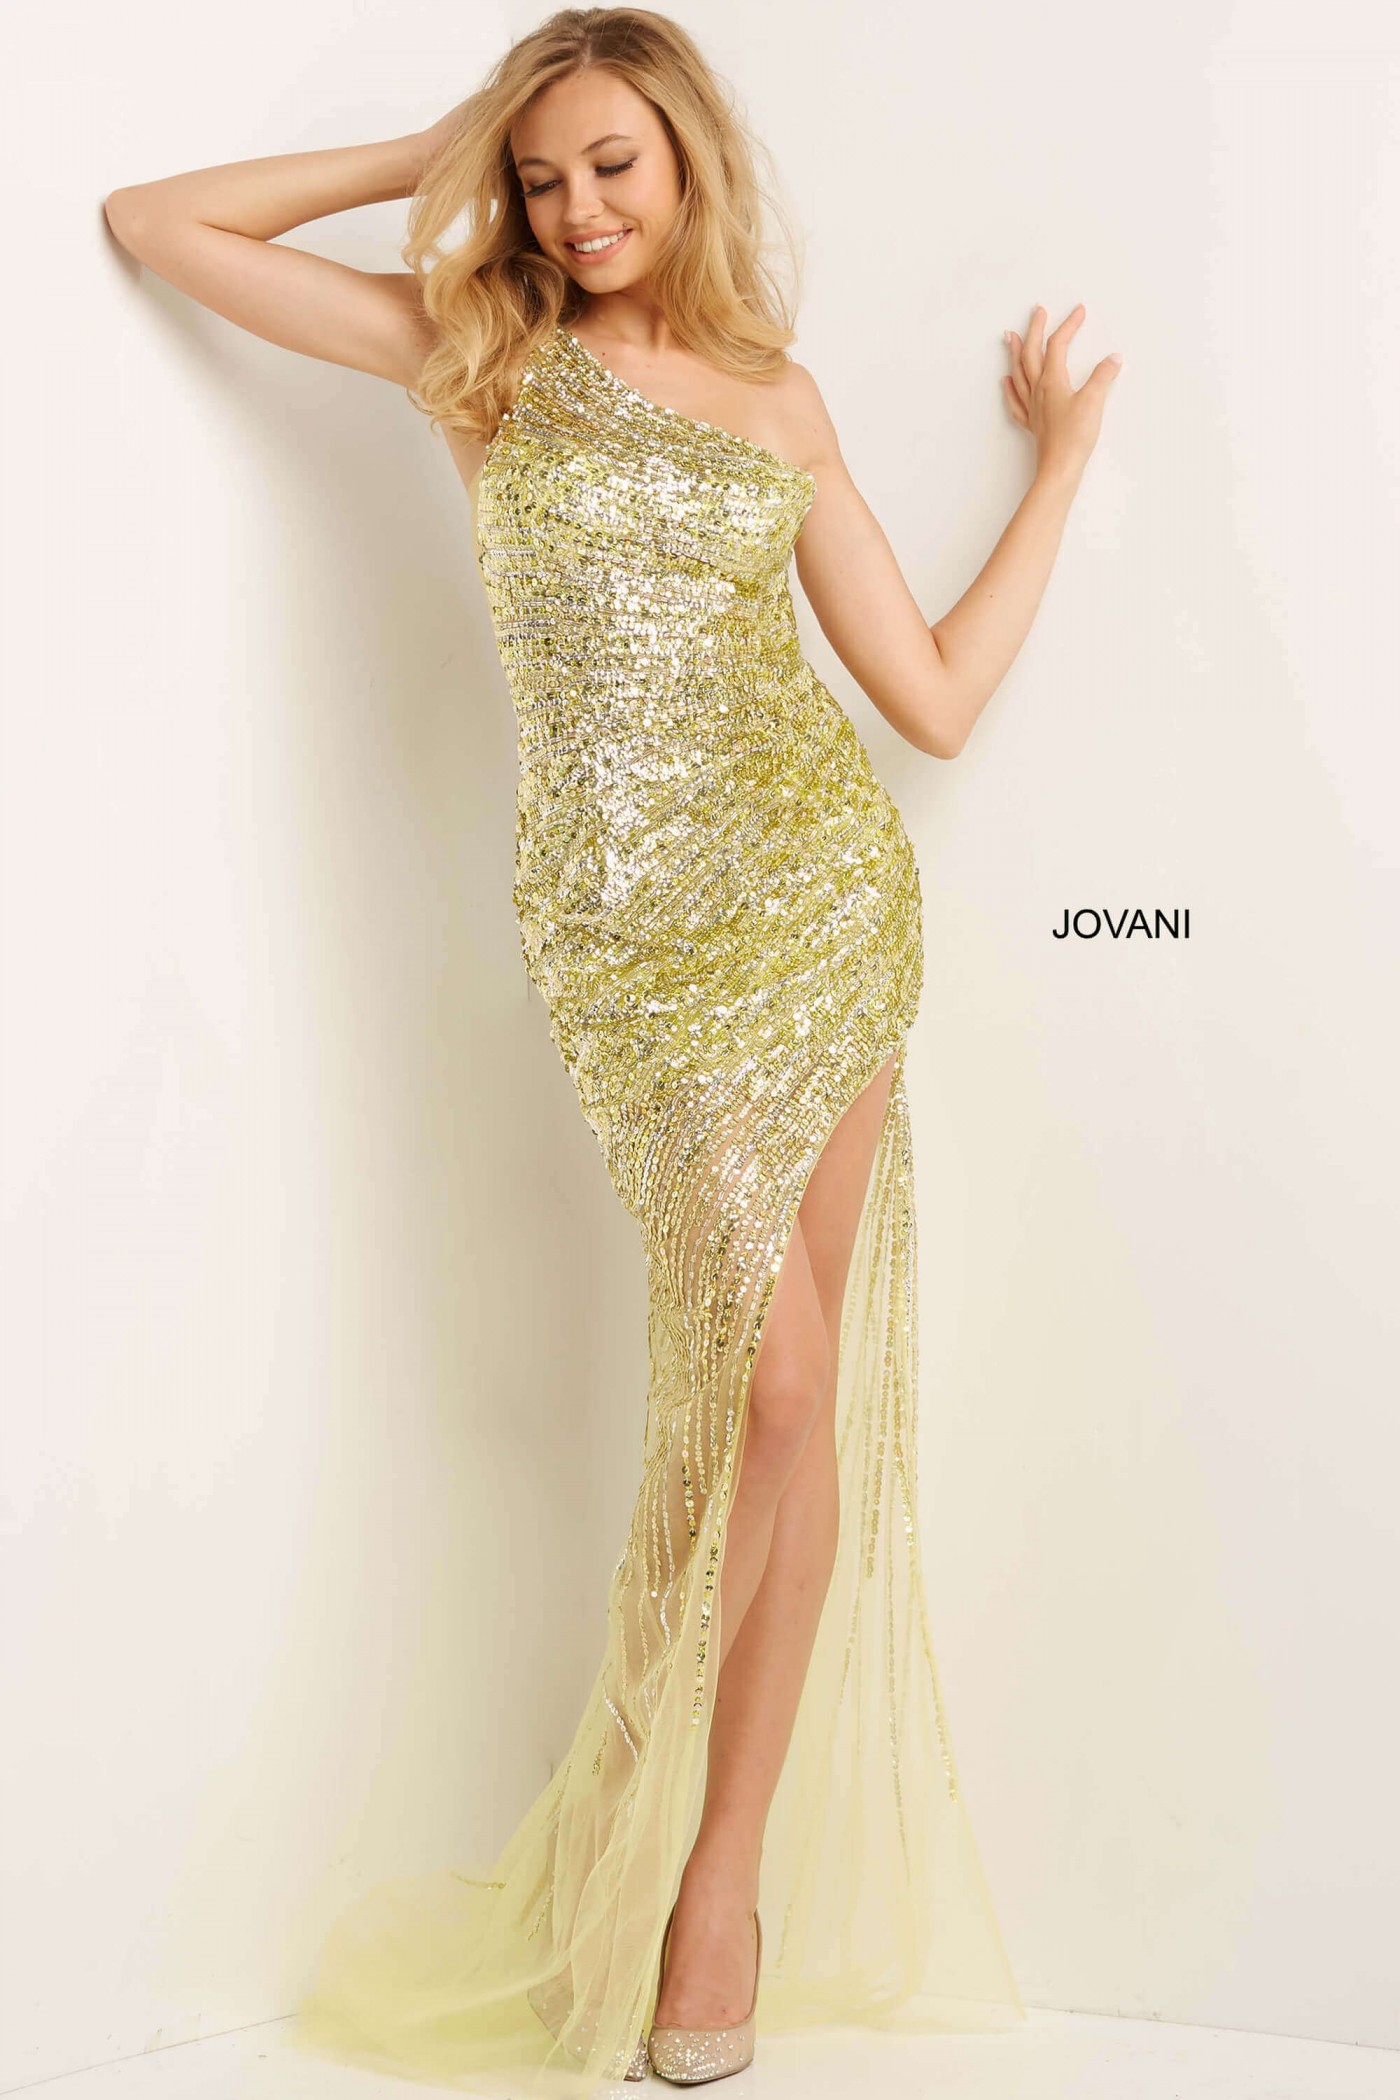 Jovani 05647 One Shoulder Sequin Prom Dress